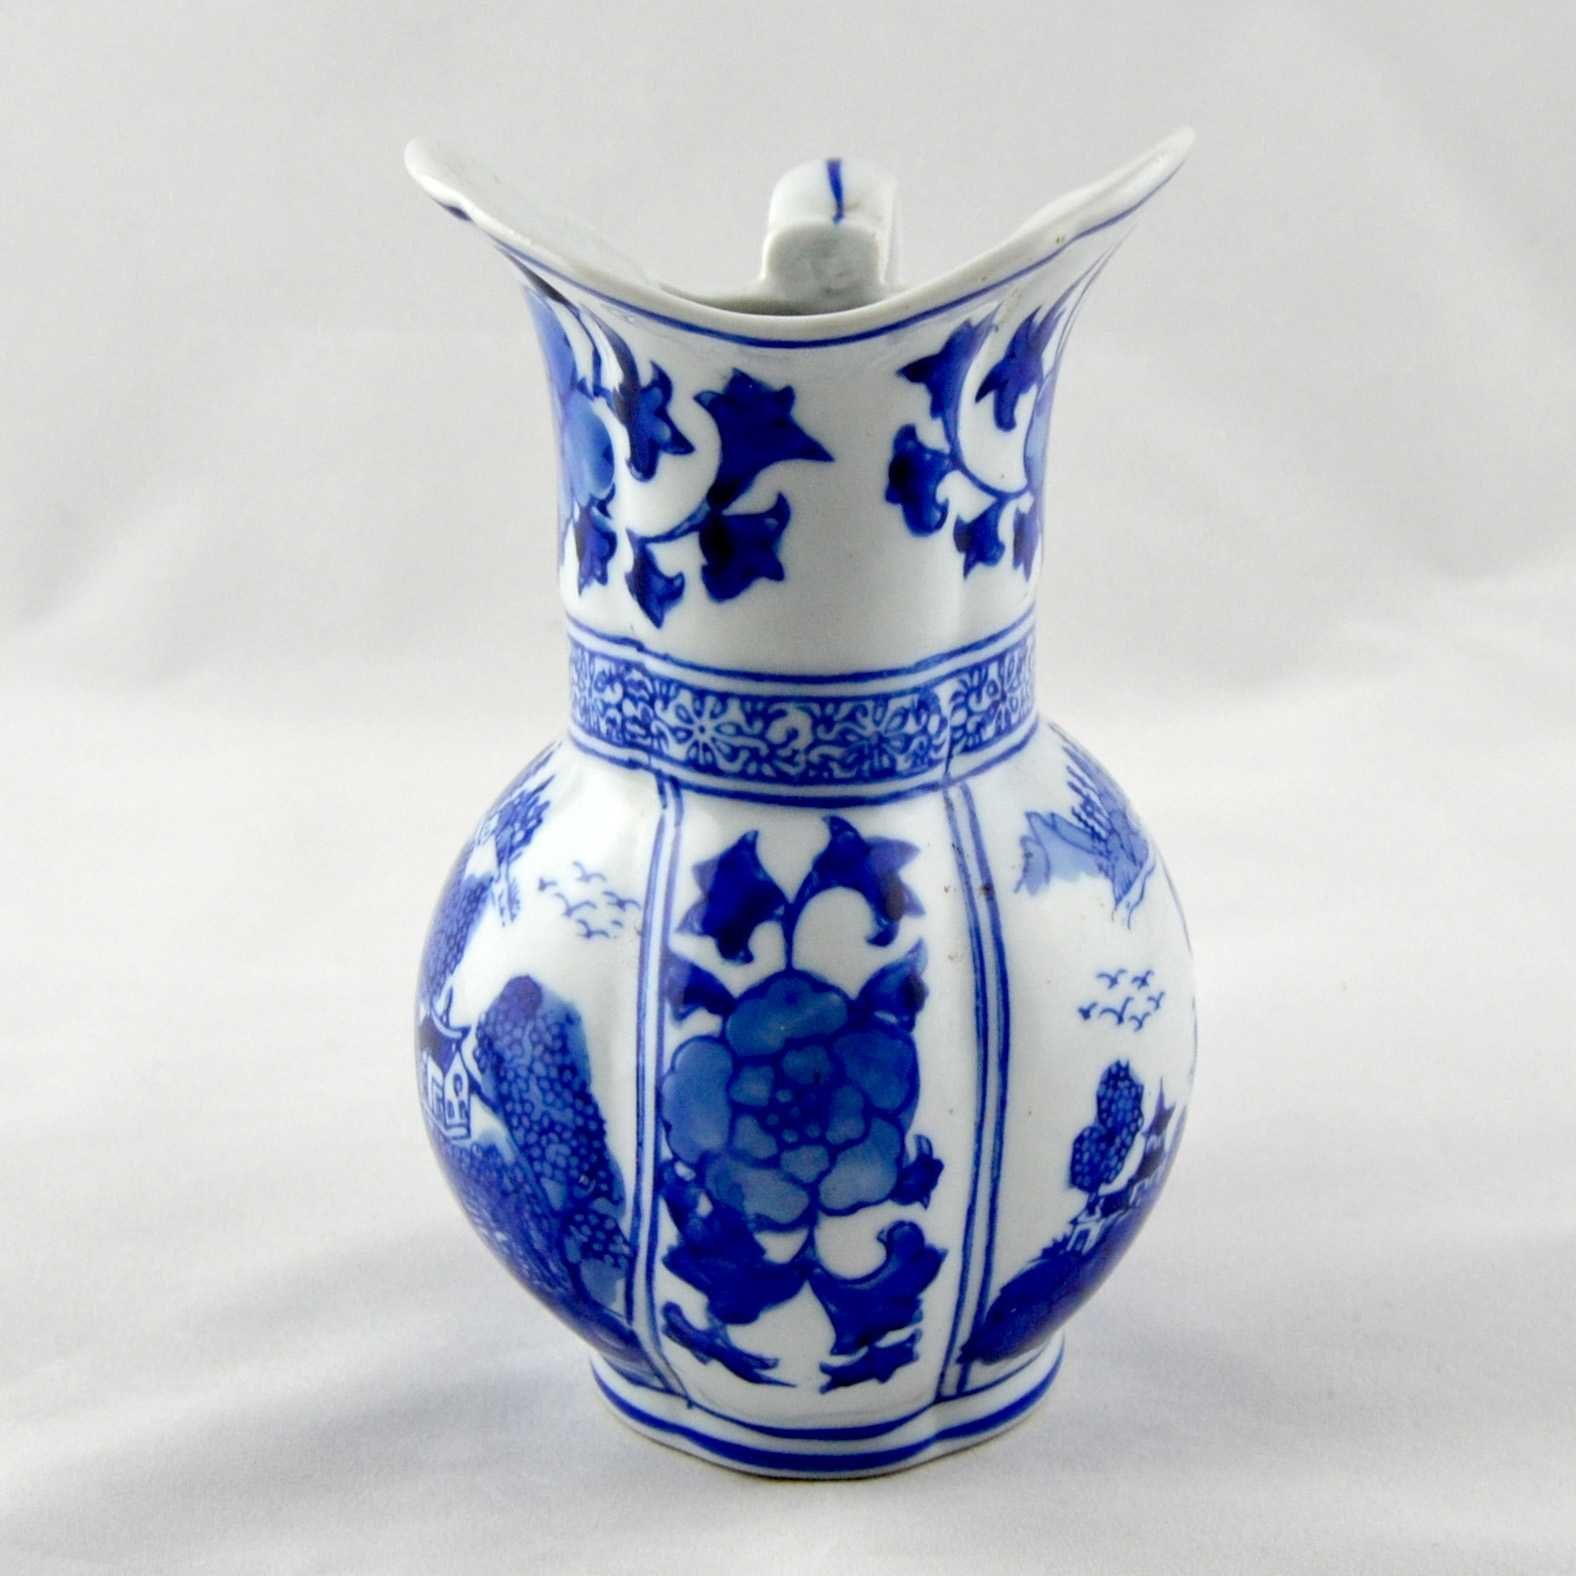 Jarro Porcelana da China Azul e Branco decorado com flores e pagodes